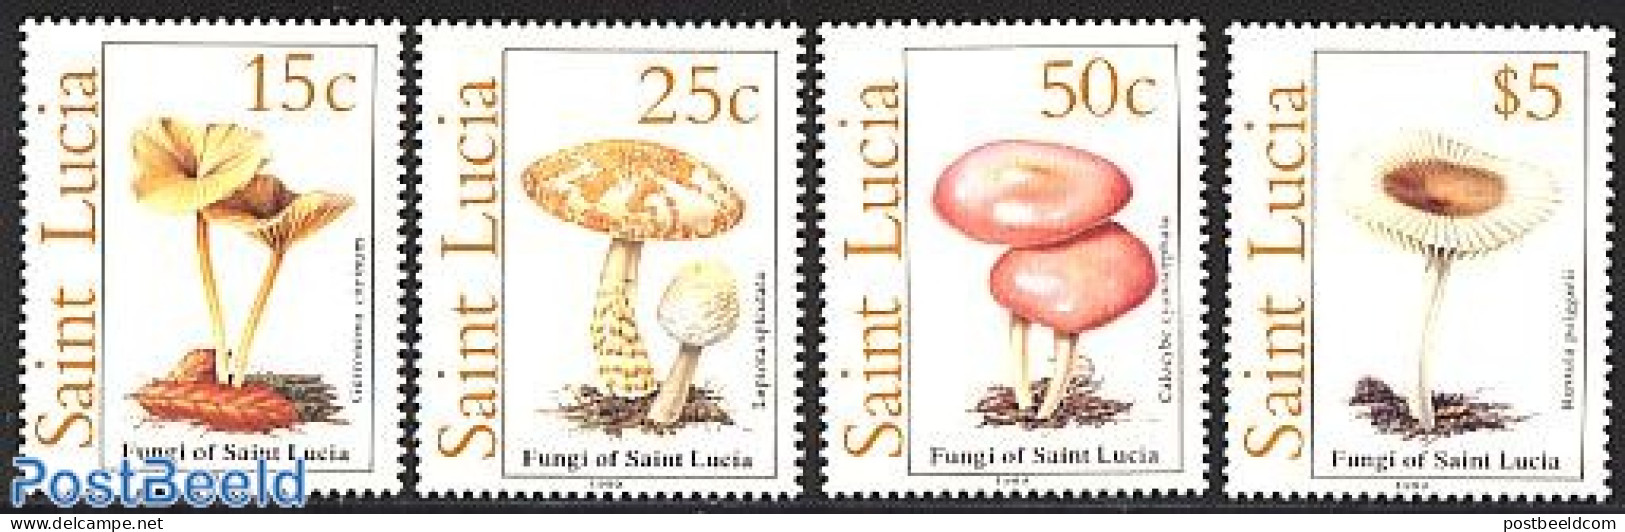 Saint Lucia 1989 Mushrooms 4v, Mint NH, Nature - Mushrooms - Pilze